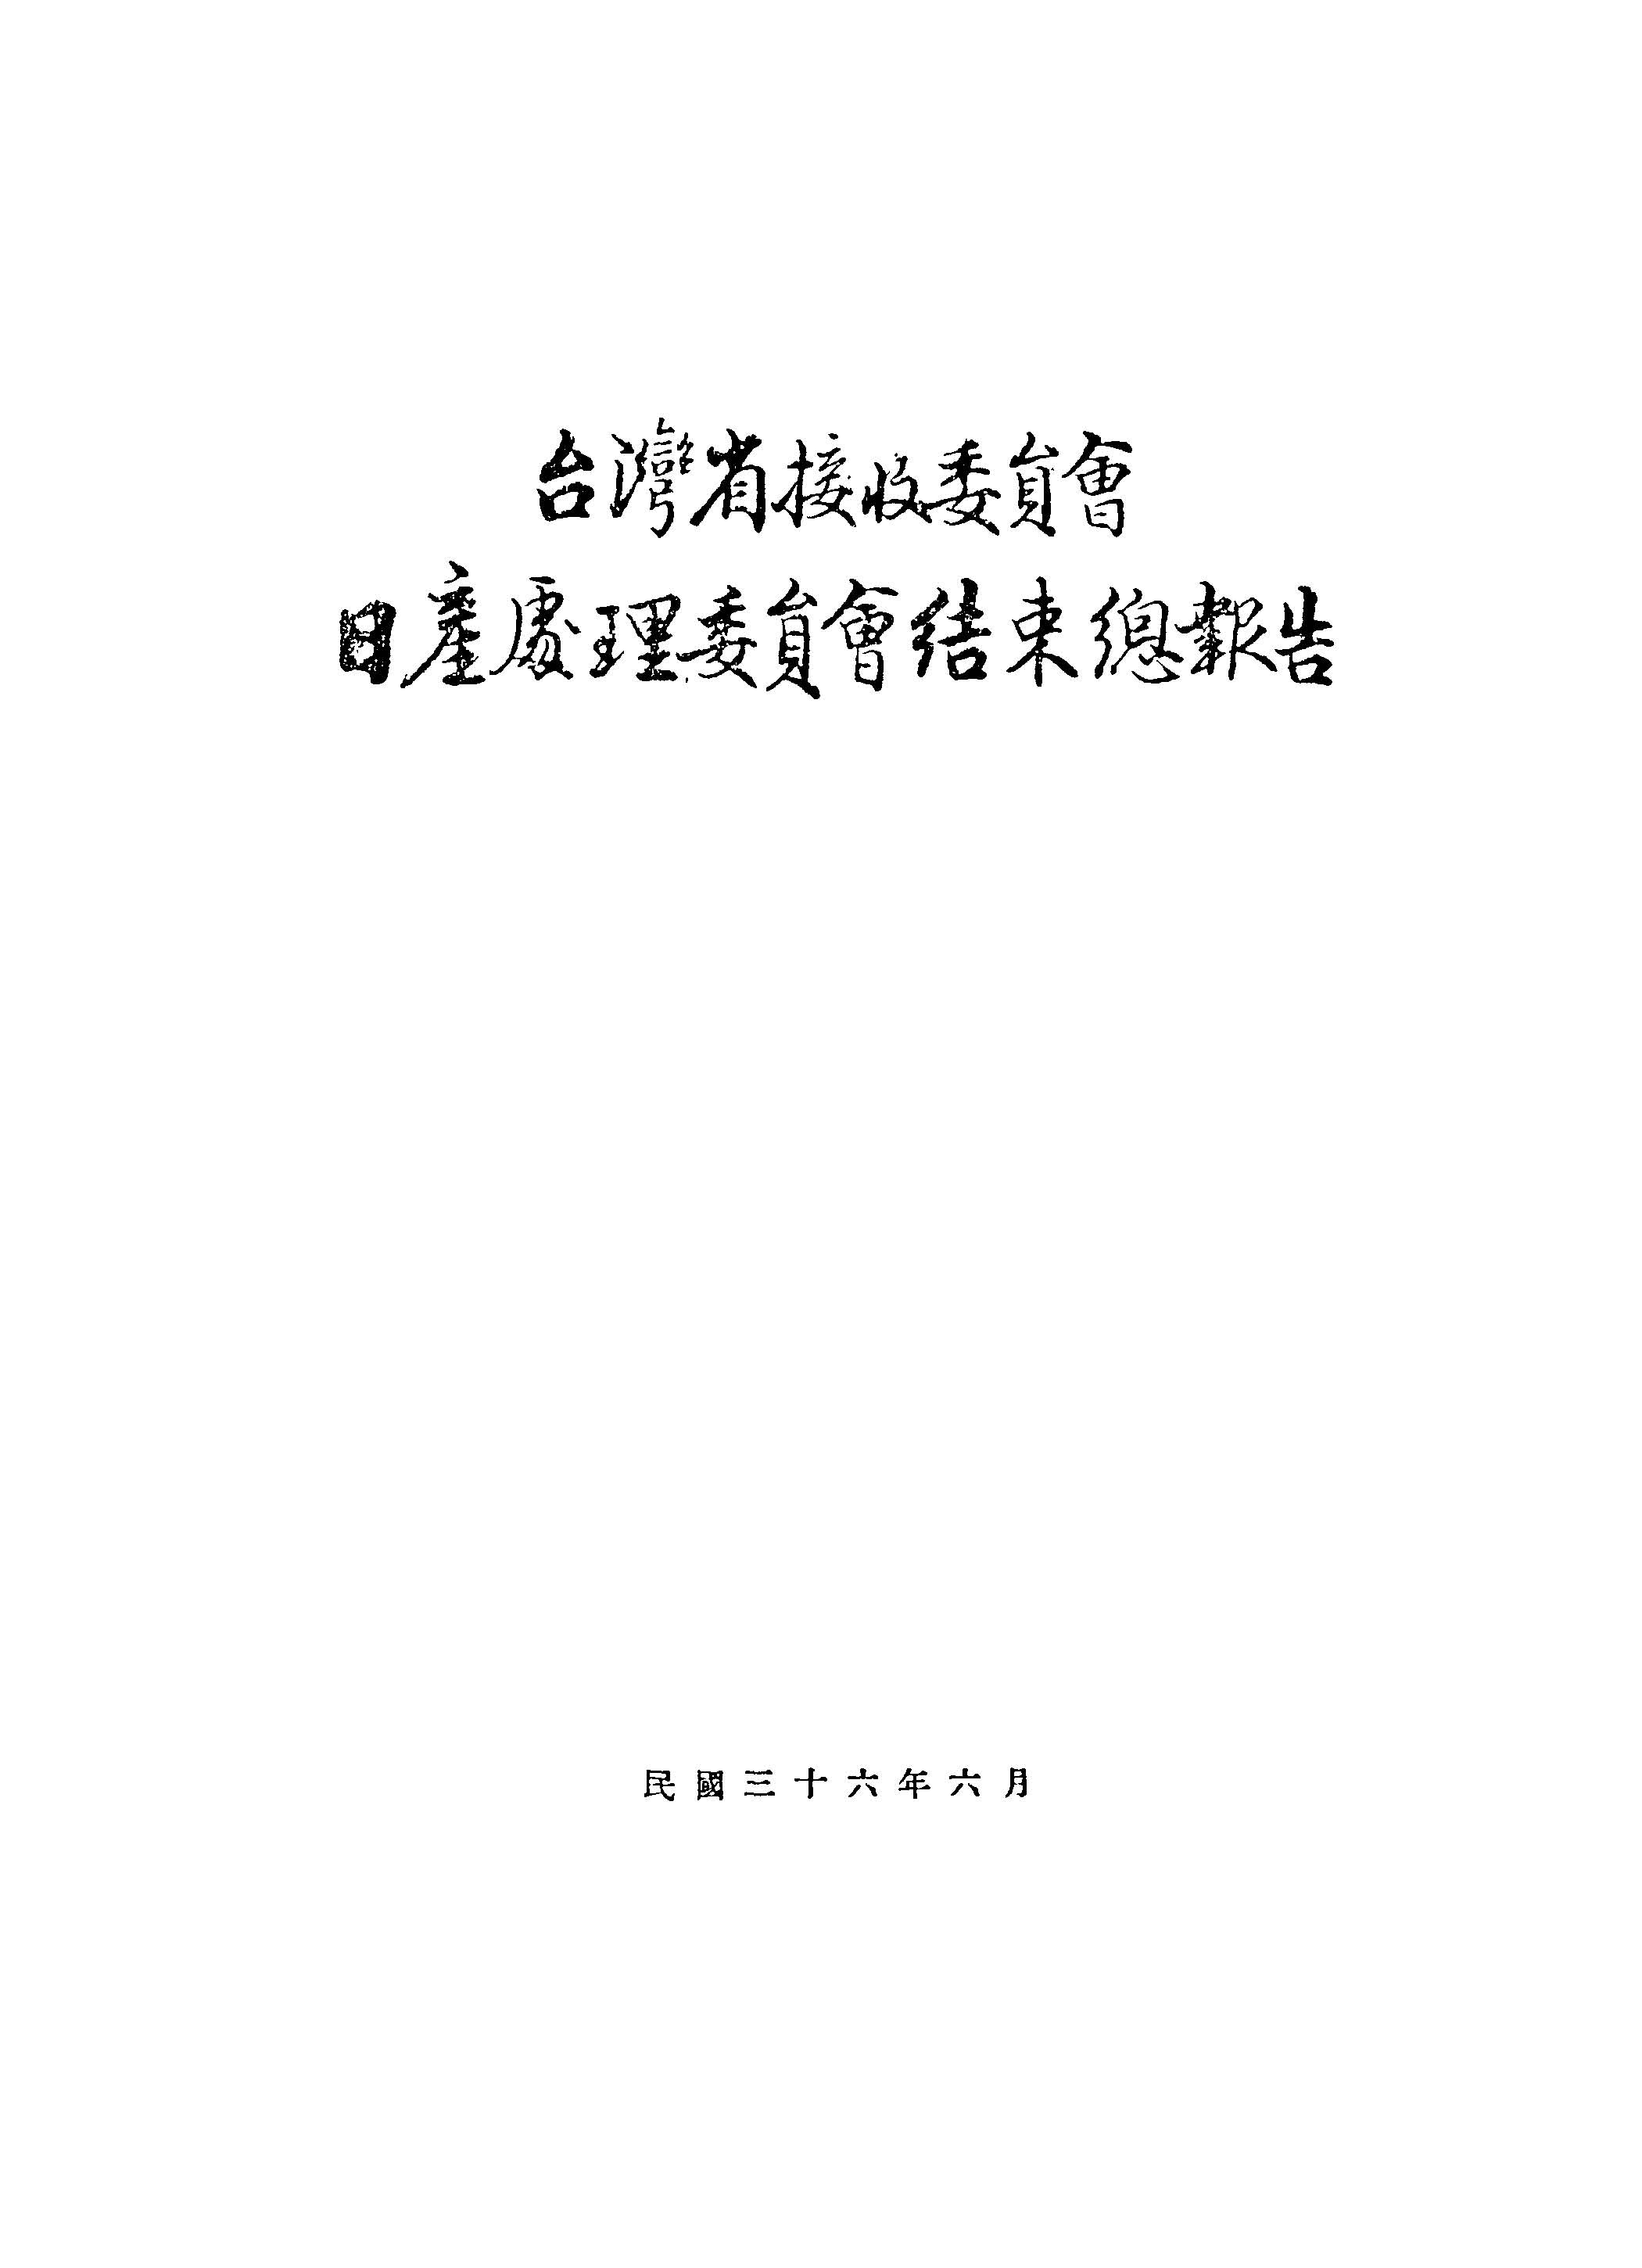 臺灣省接收委員會日產處理委員會結束總報告